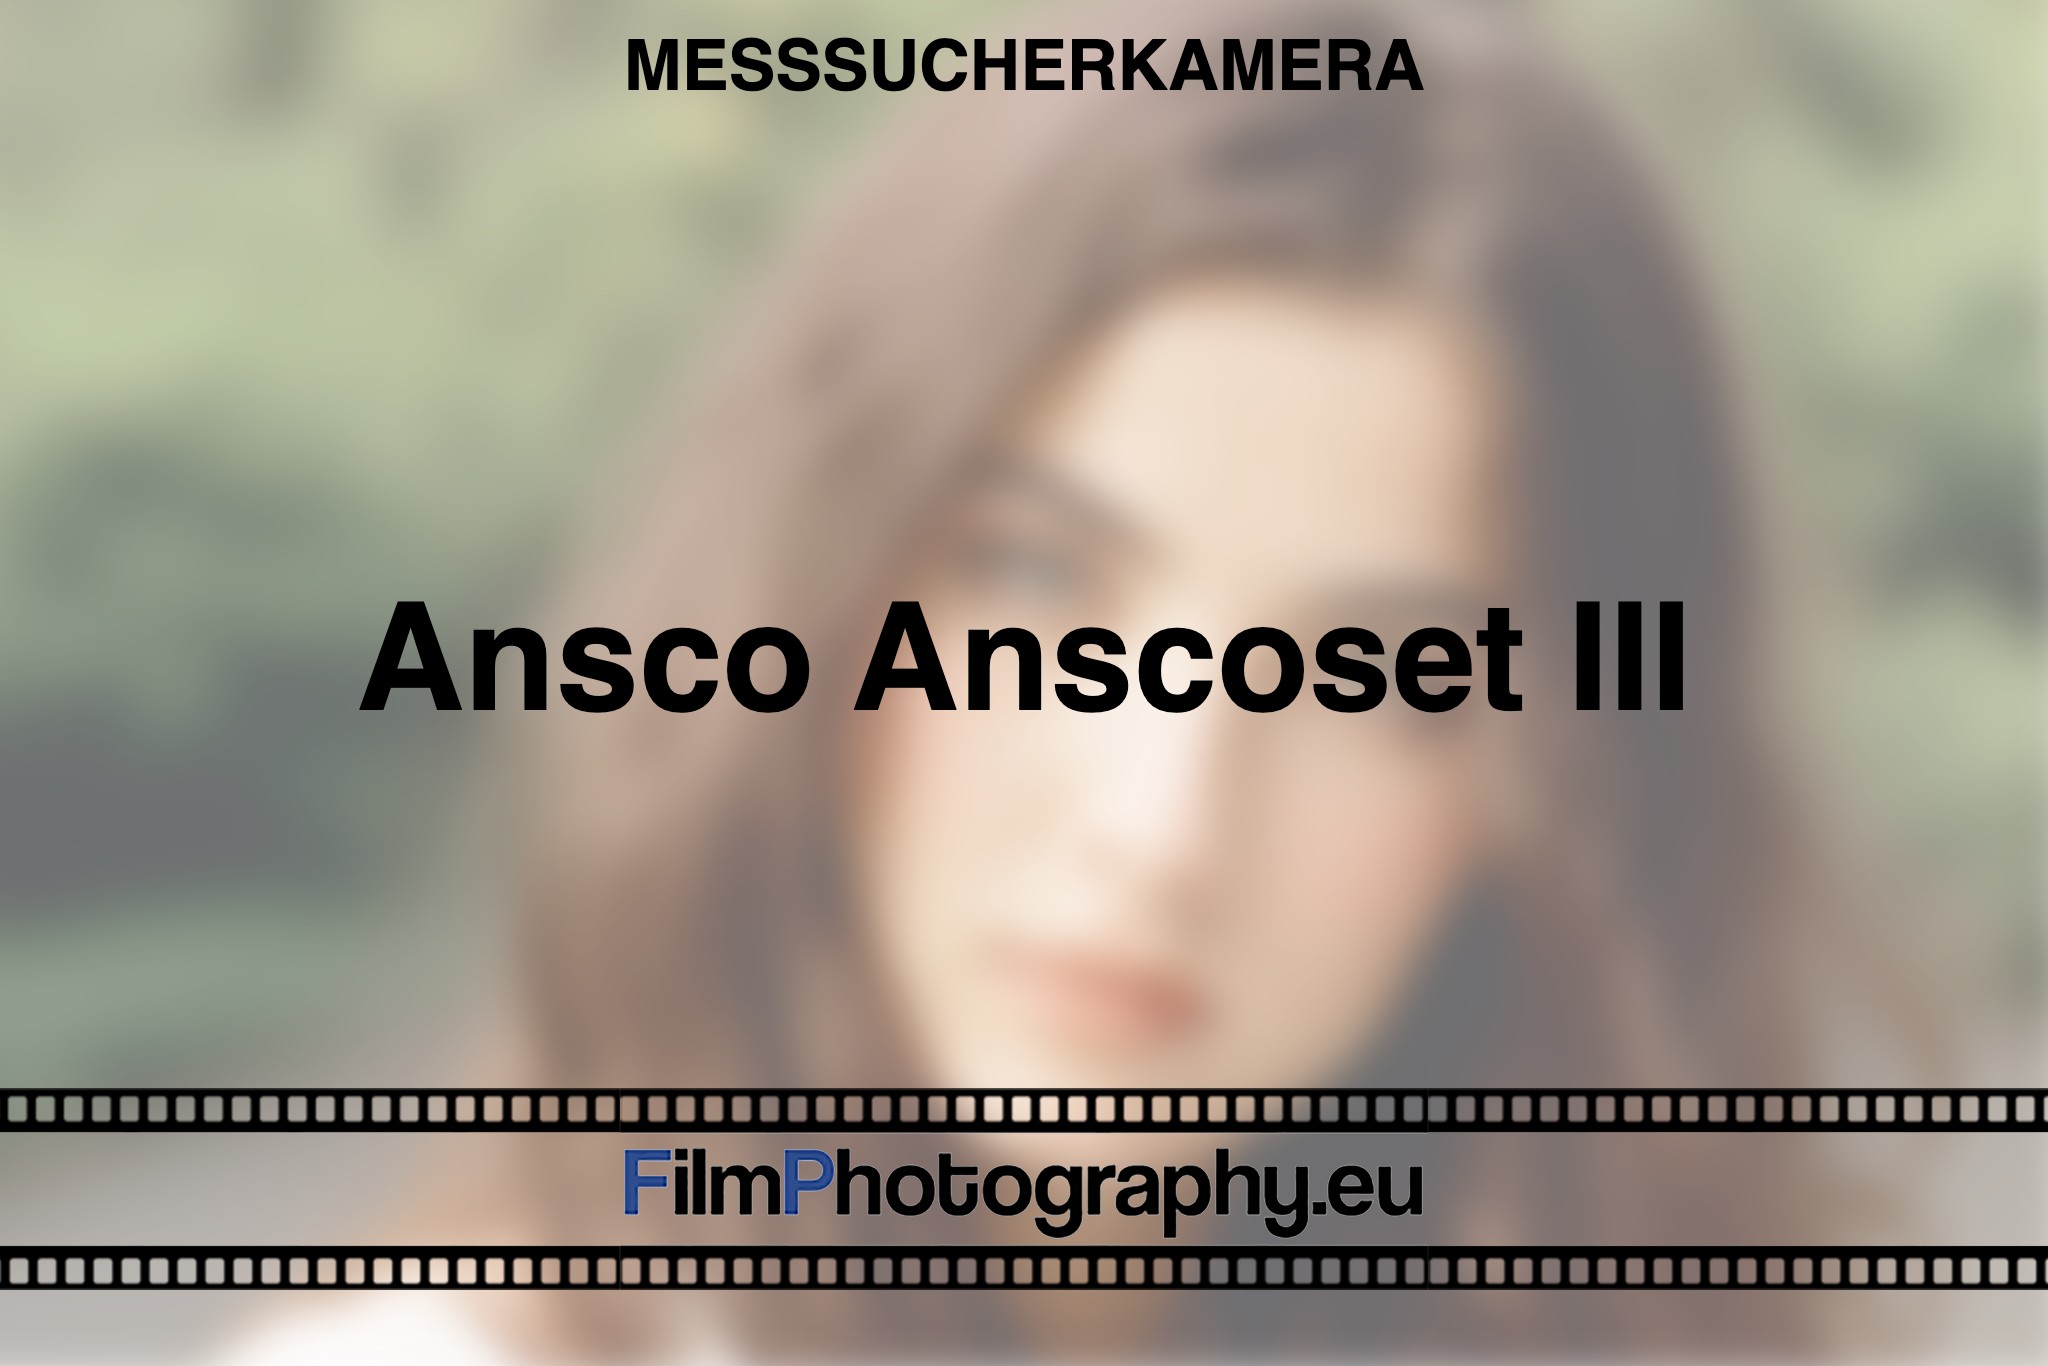 ansco-anscoset-iii-messsucherkamera-bnv